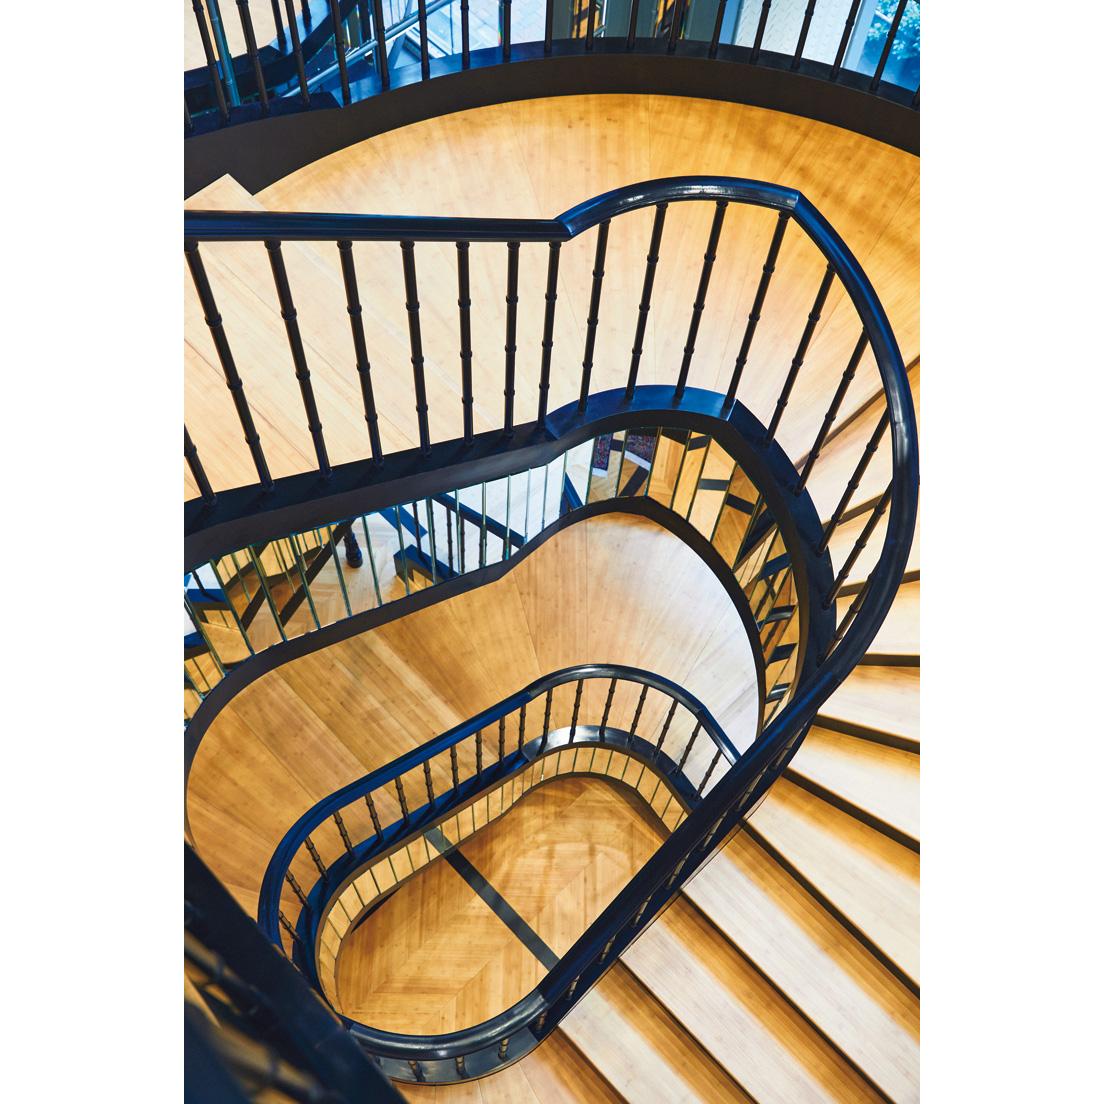 鏡張りの螺旋階段が、美しく各階を繋ぐ。